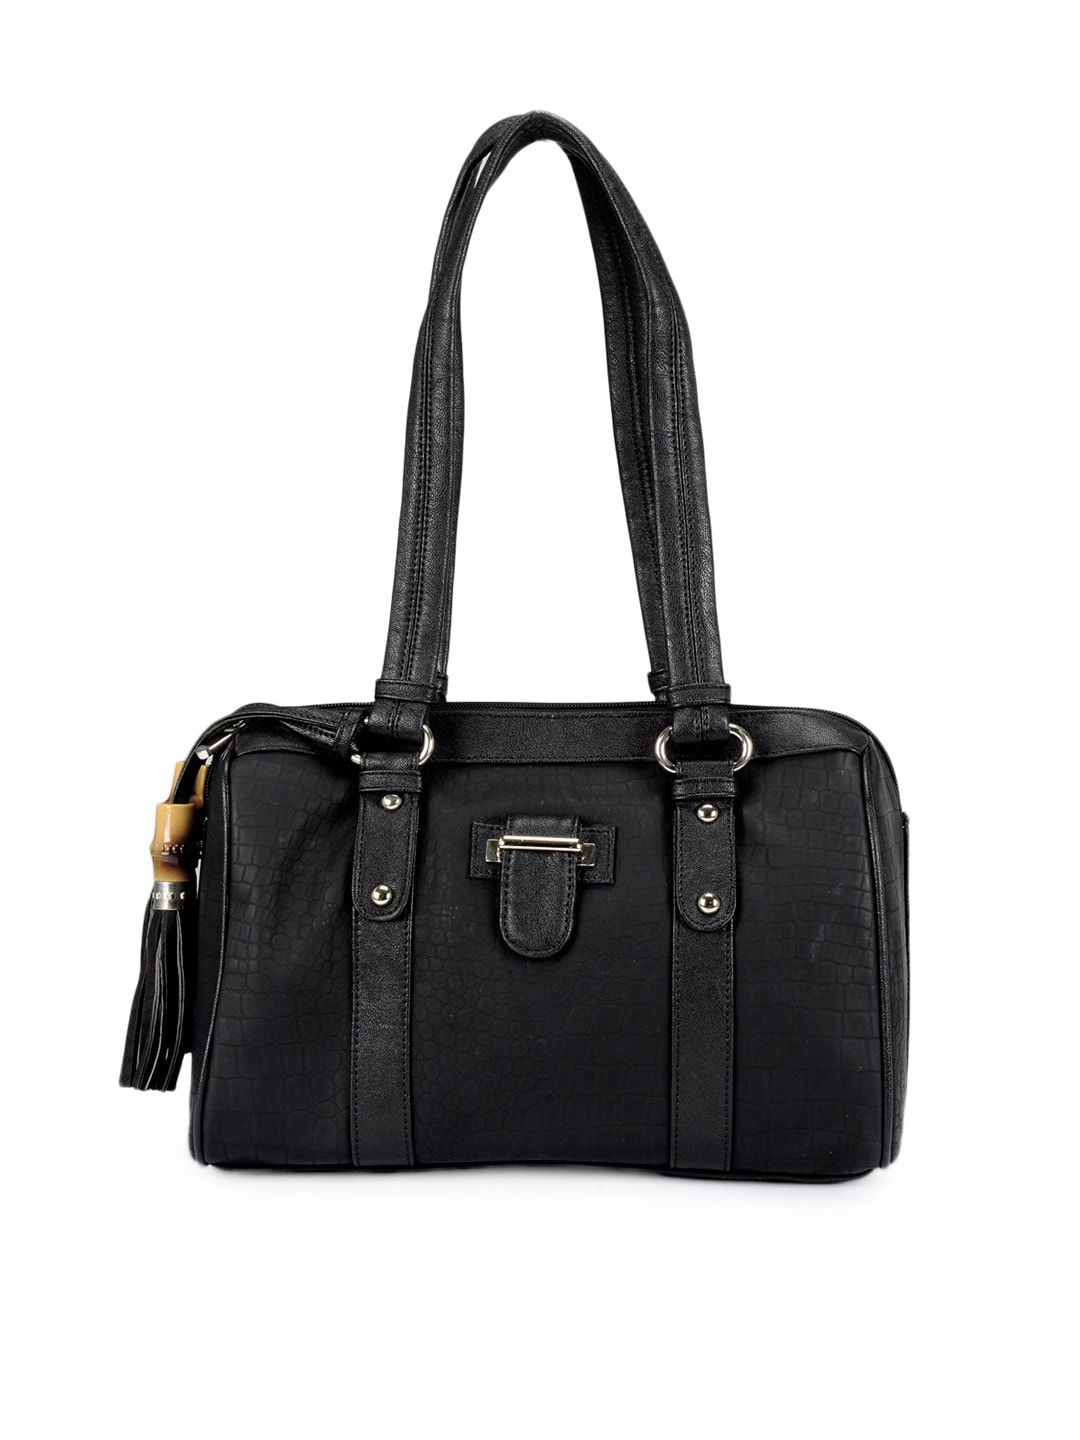 Rocia Women Black Handbag